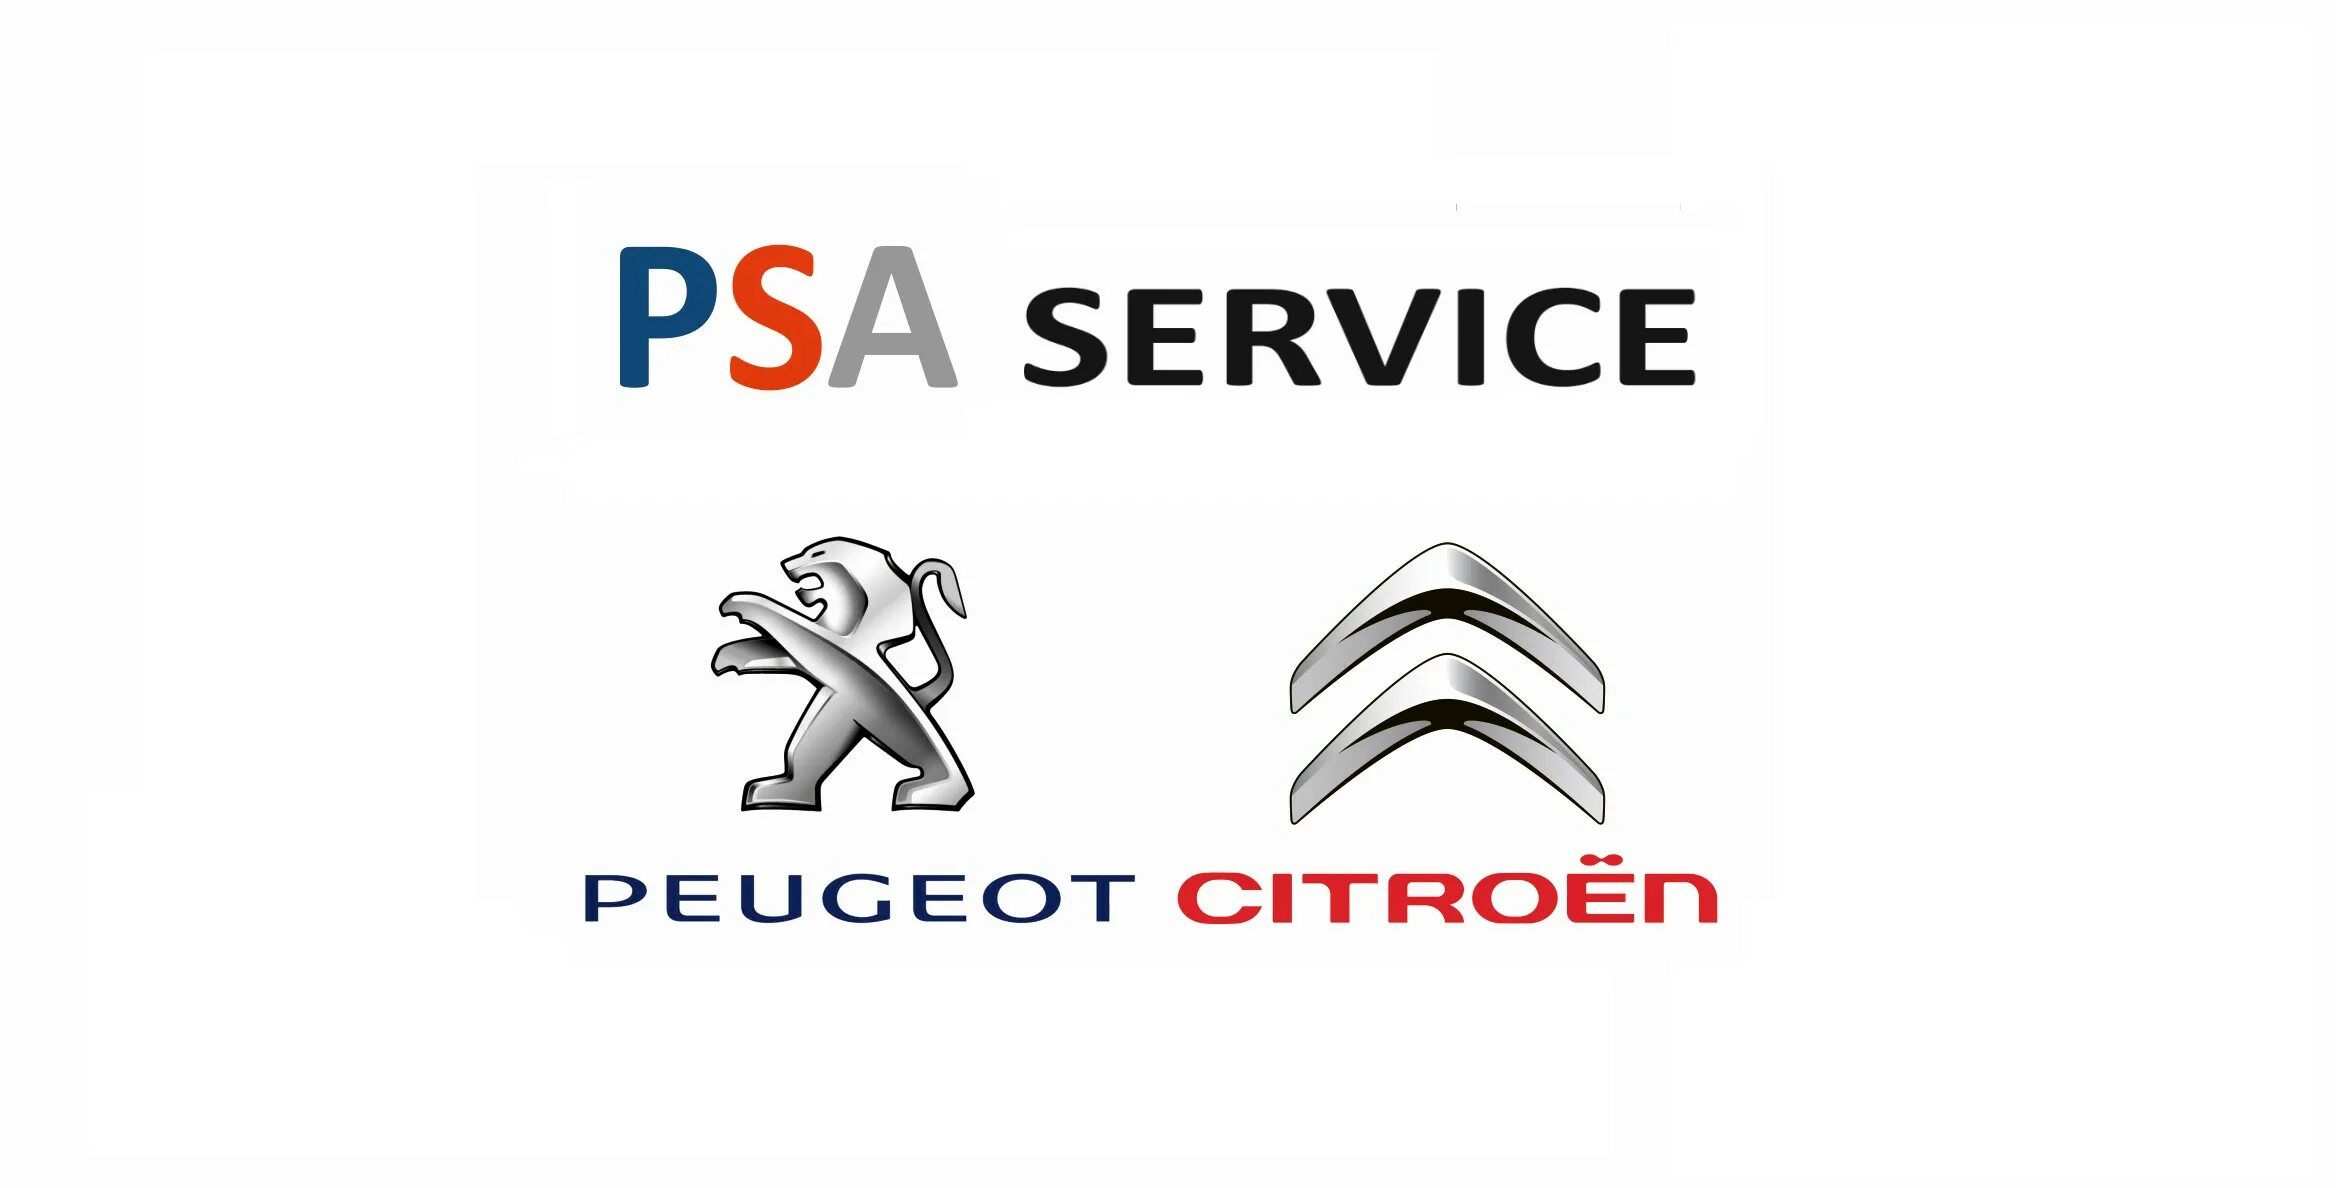 Peugeot mitsubishi. Концерн Пежо Ситроен. Логотип Пежо Ситроен. Пса Пежо Ситроен. PSA логотип.